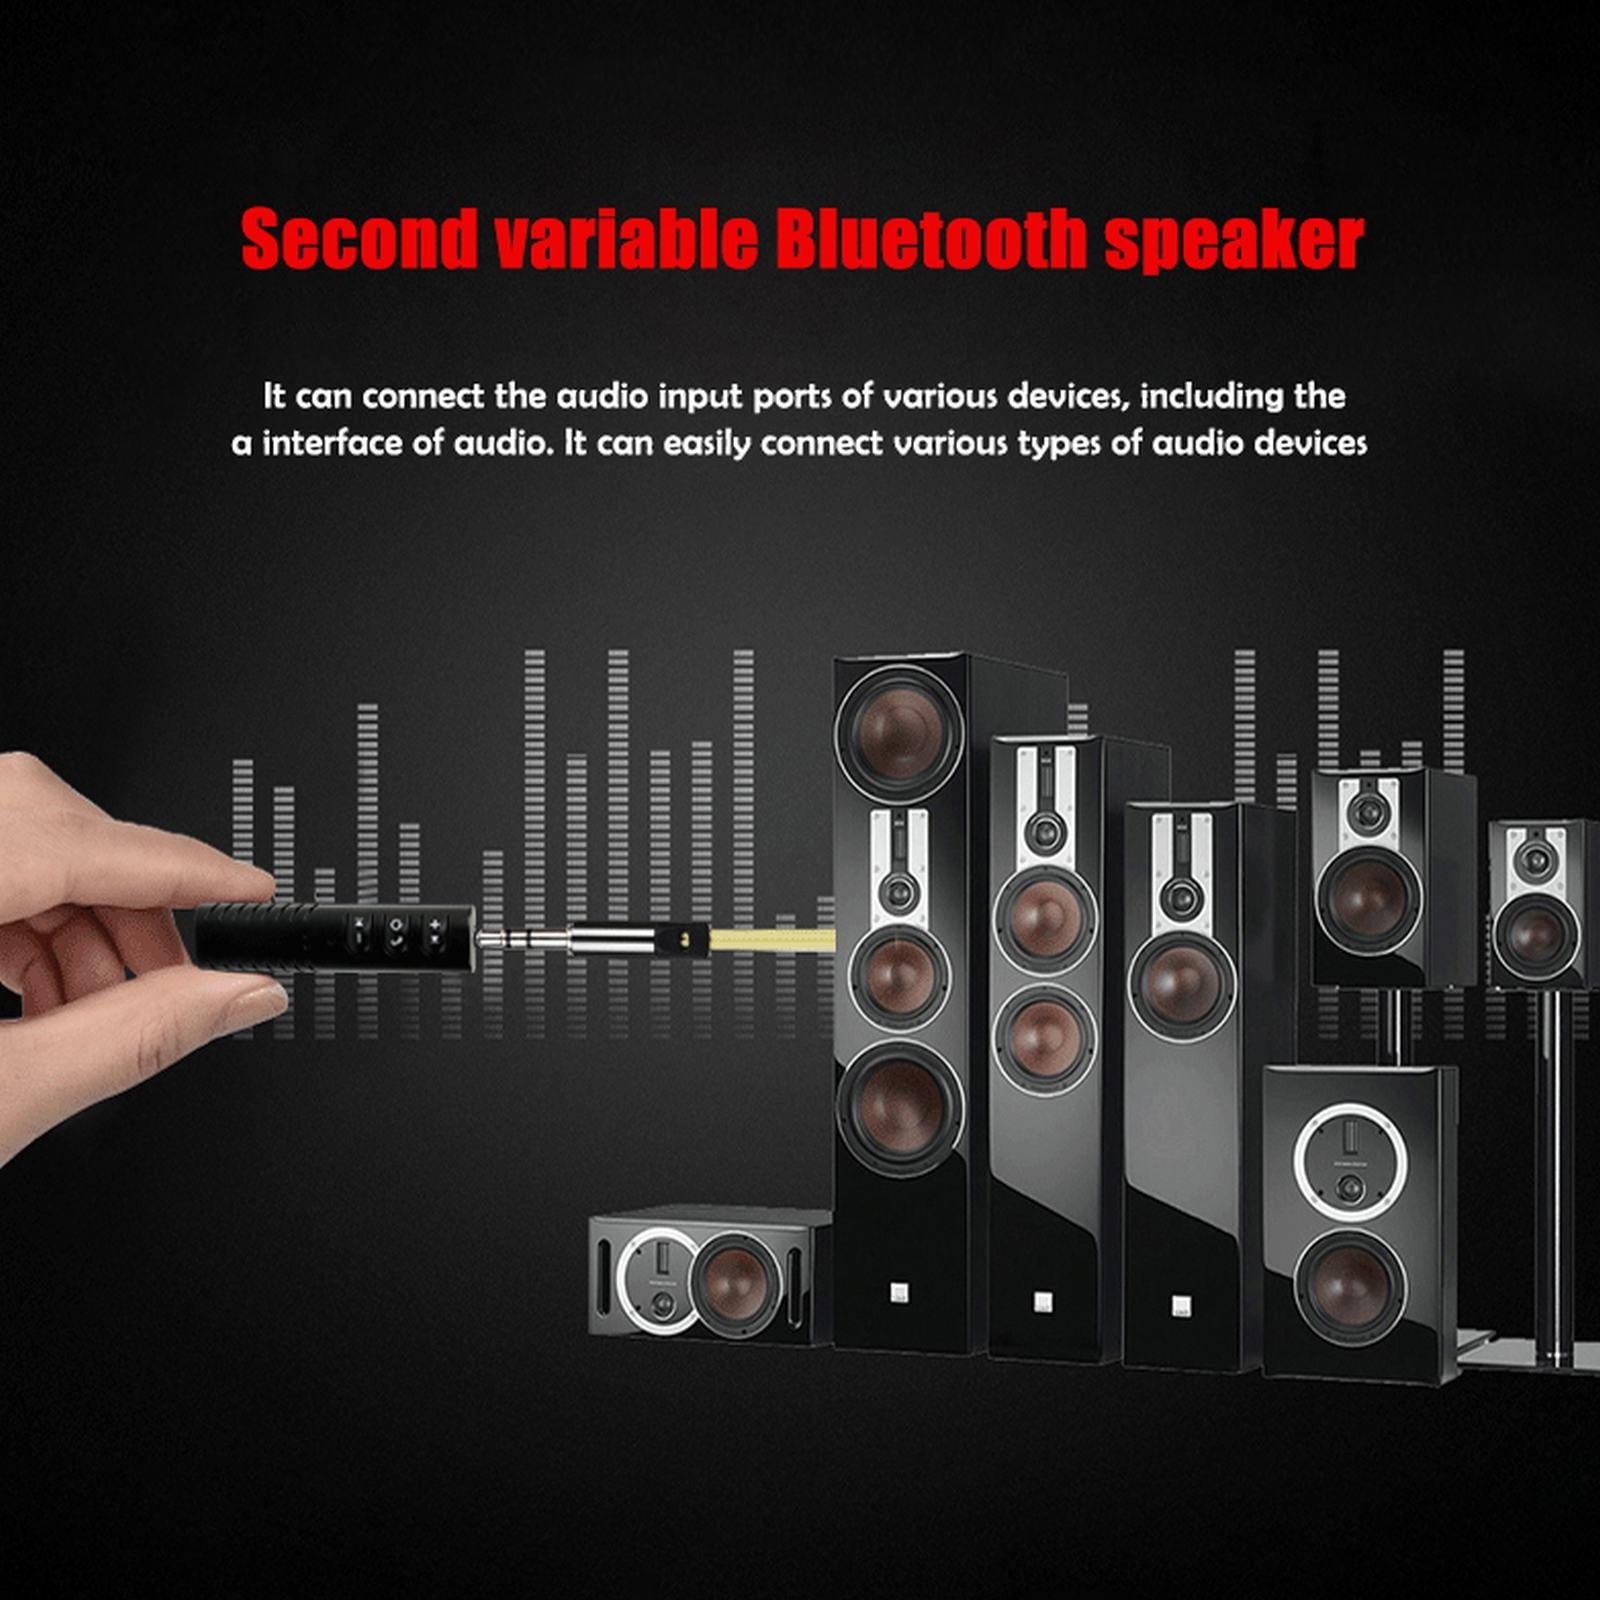 Auto Bluetooth Audio Receiver,MoreChioce Bluetooth 3.0 Adapter